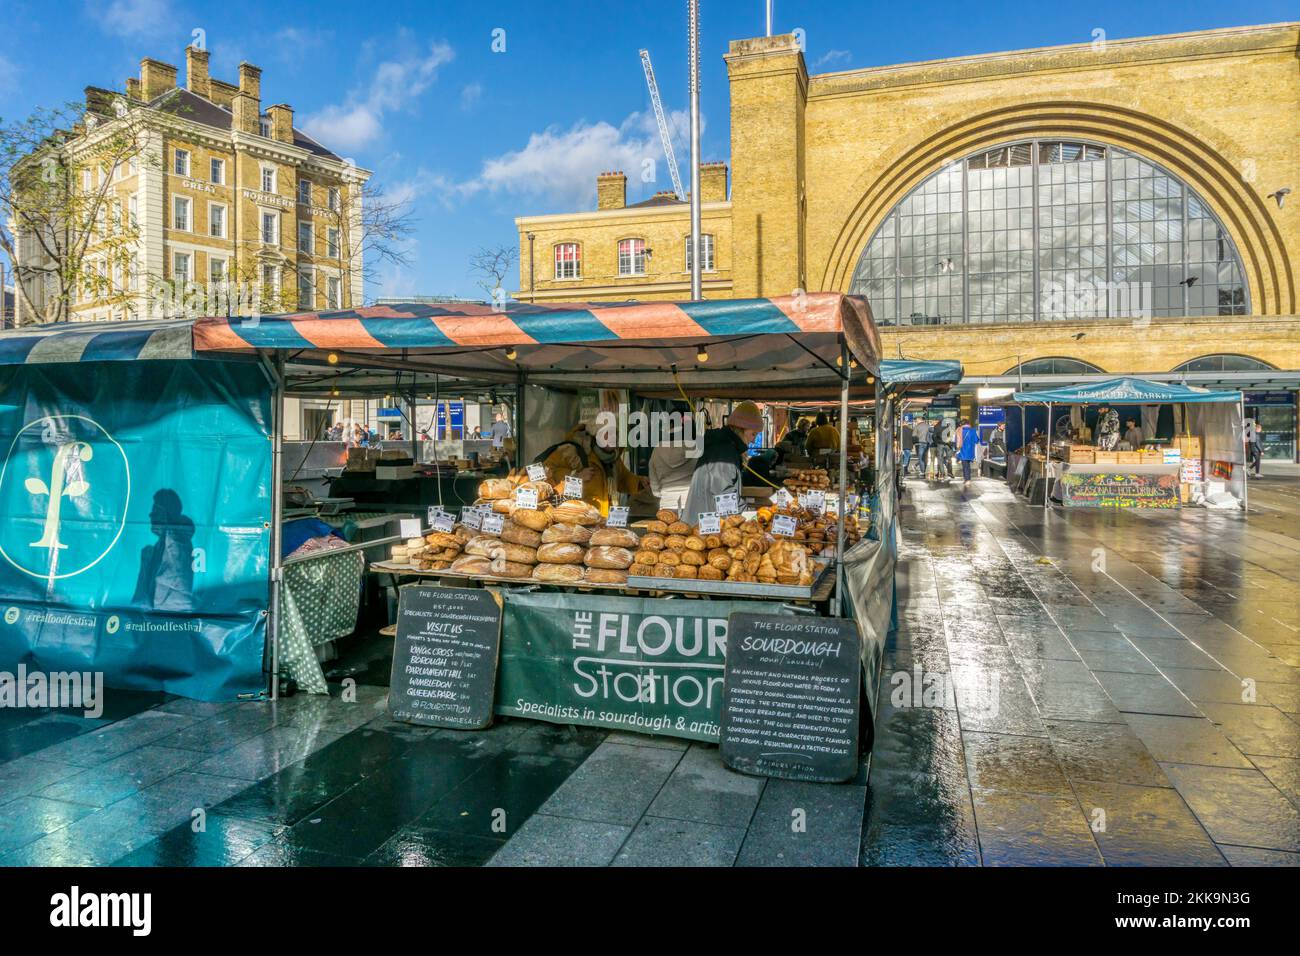 Il Flour Station Bread Stall su un mercato alimentare fuori dalla stazione ferroviaria di King's Cross, Londra. Foto Stock